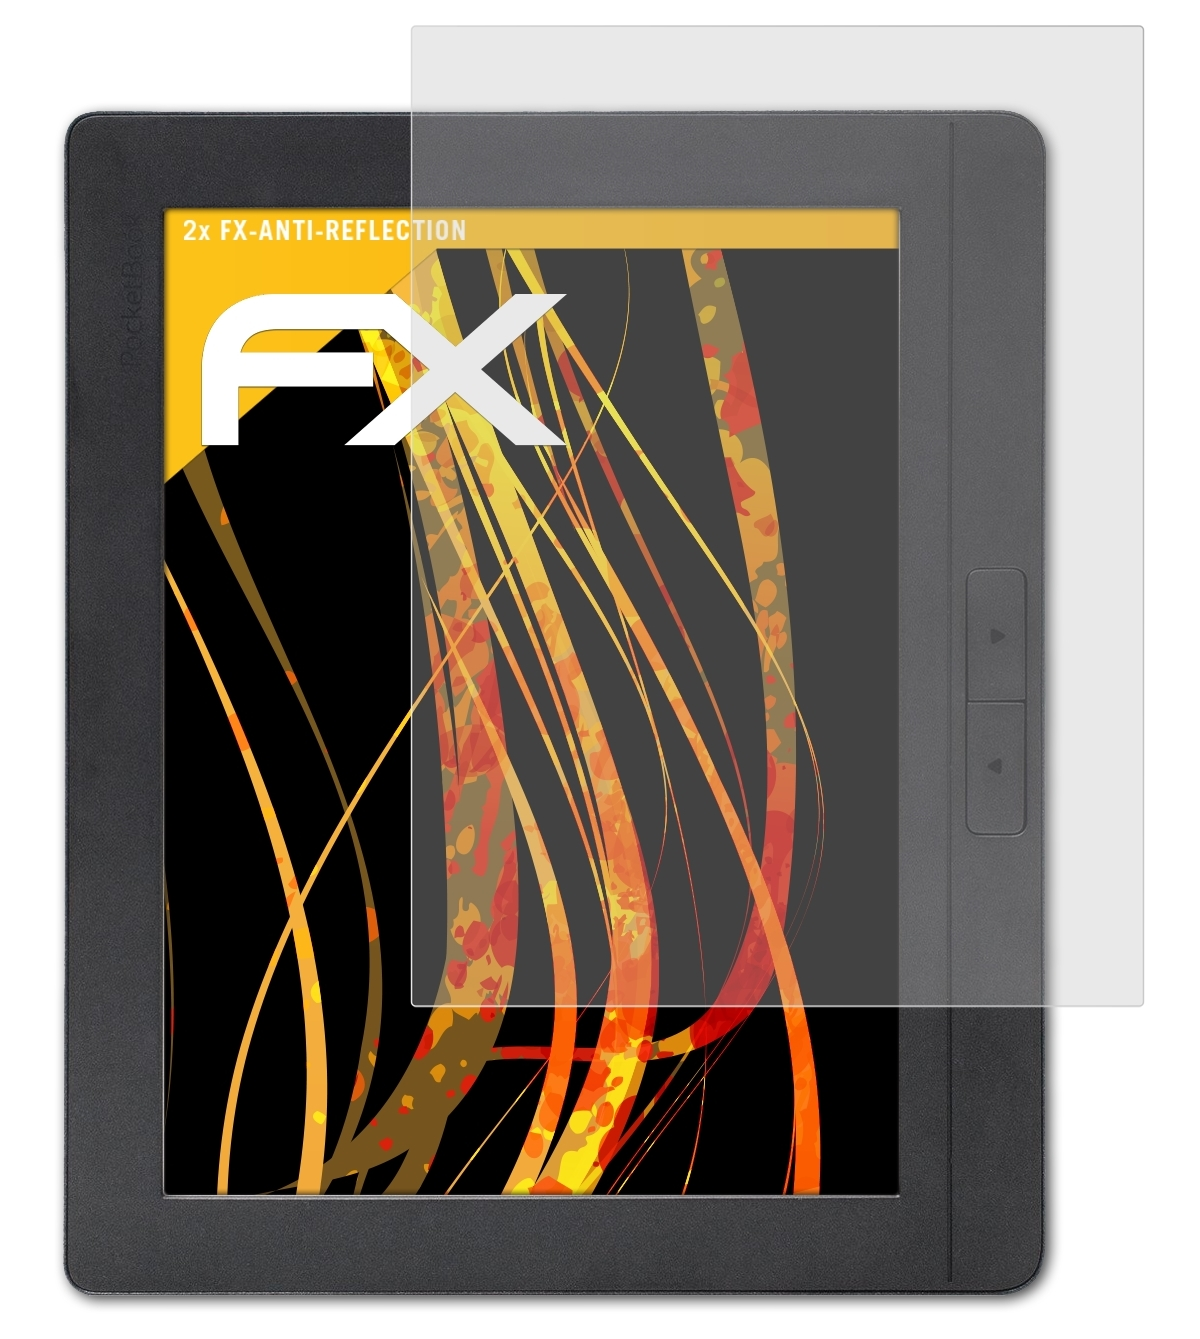 ATFOLIX 2x FX-Antireflex 2) InkPad PocketBook Displayschutz(für